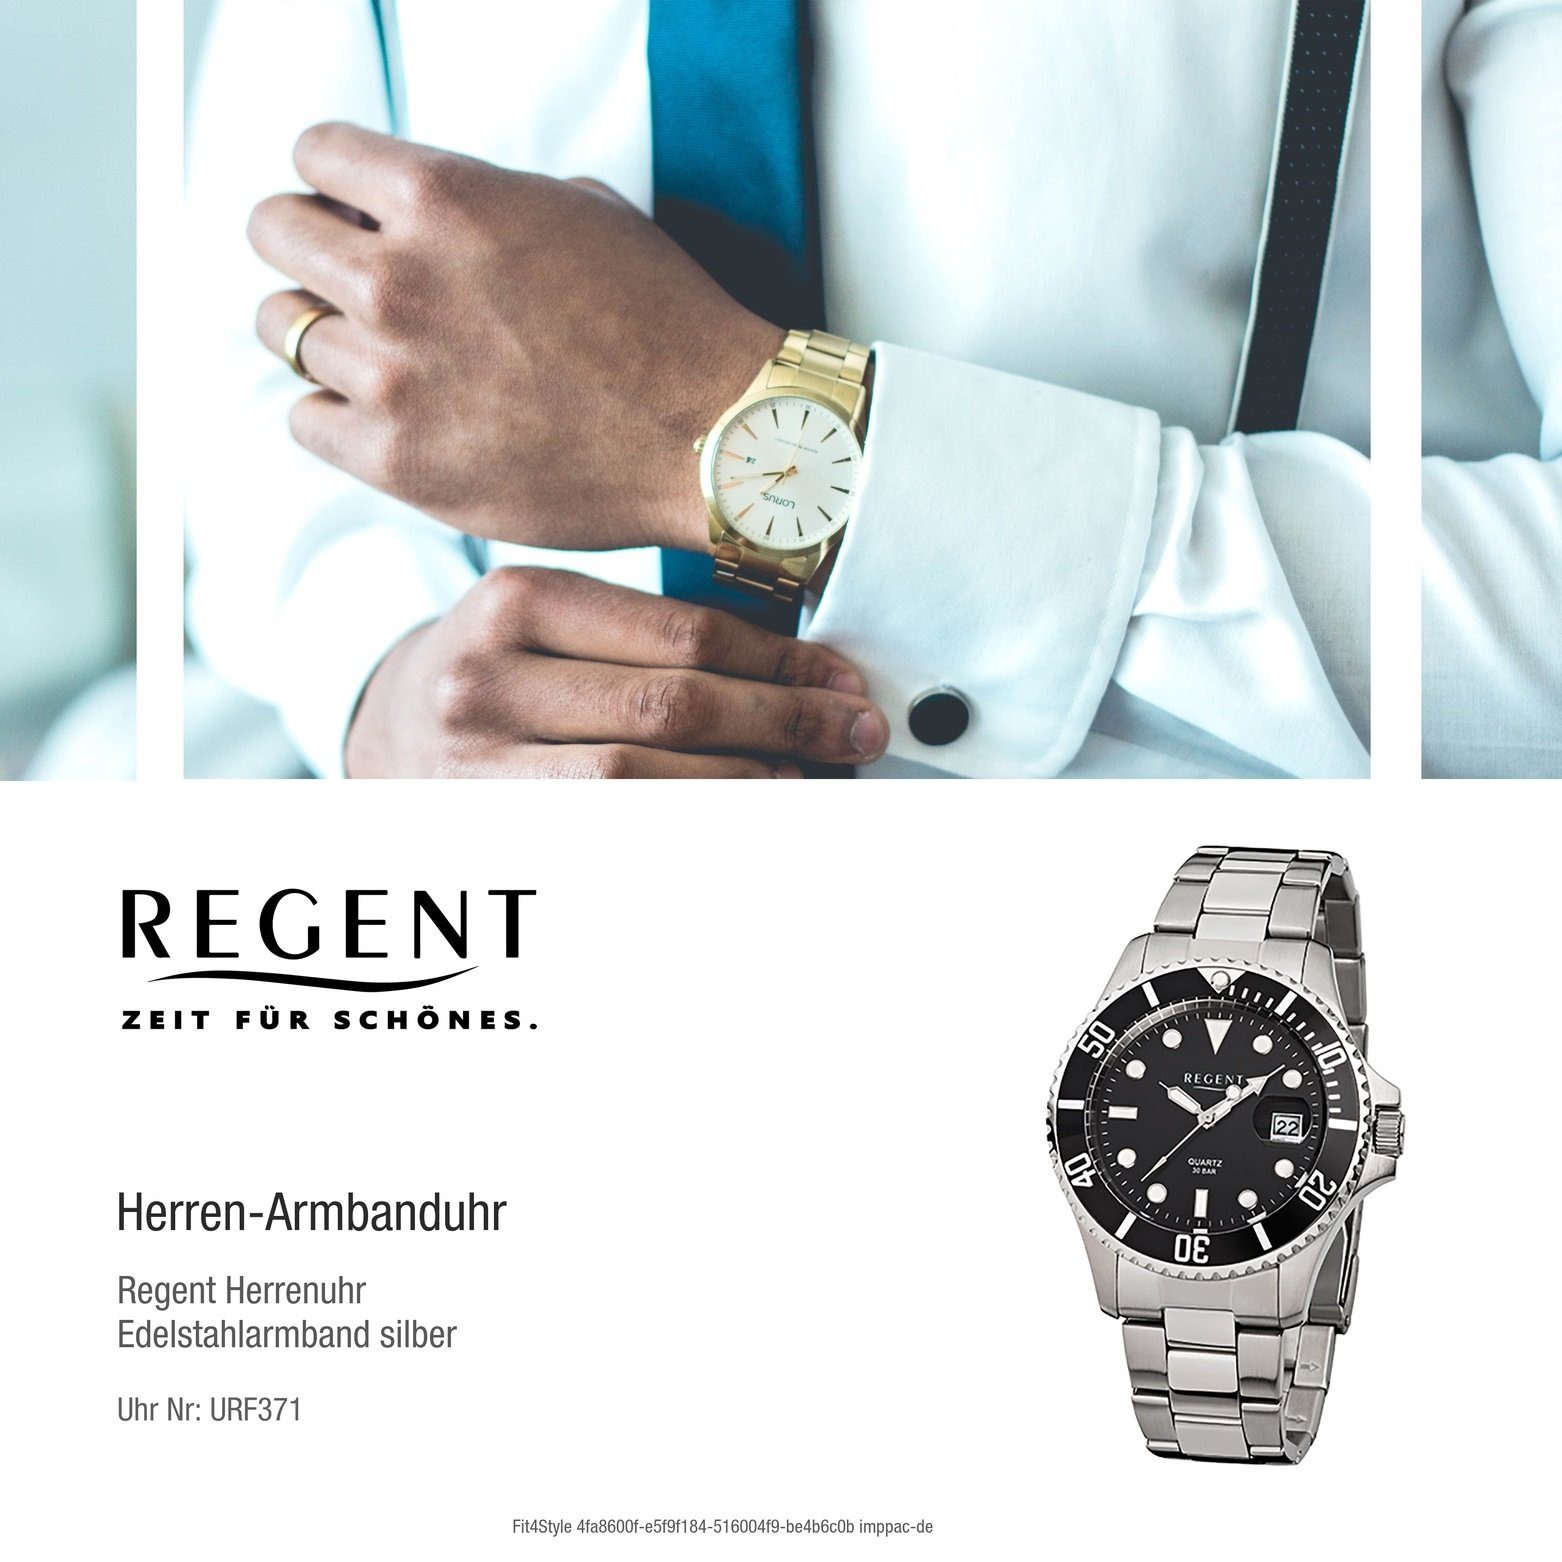 groß Regent (ca. Armbanduhr Regent silber Herren Herren-Armbanduhr Edelstahlarmband Analog, Quarzuhr rund, 40mm),